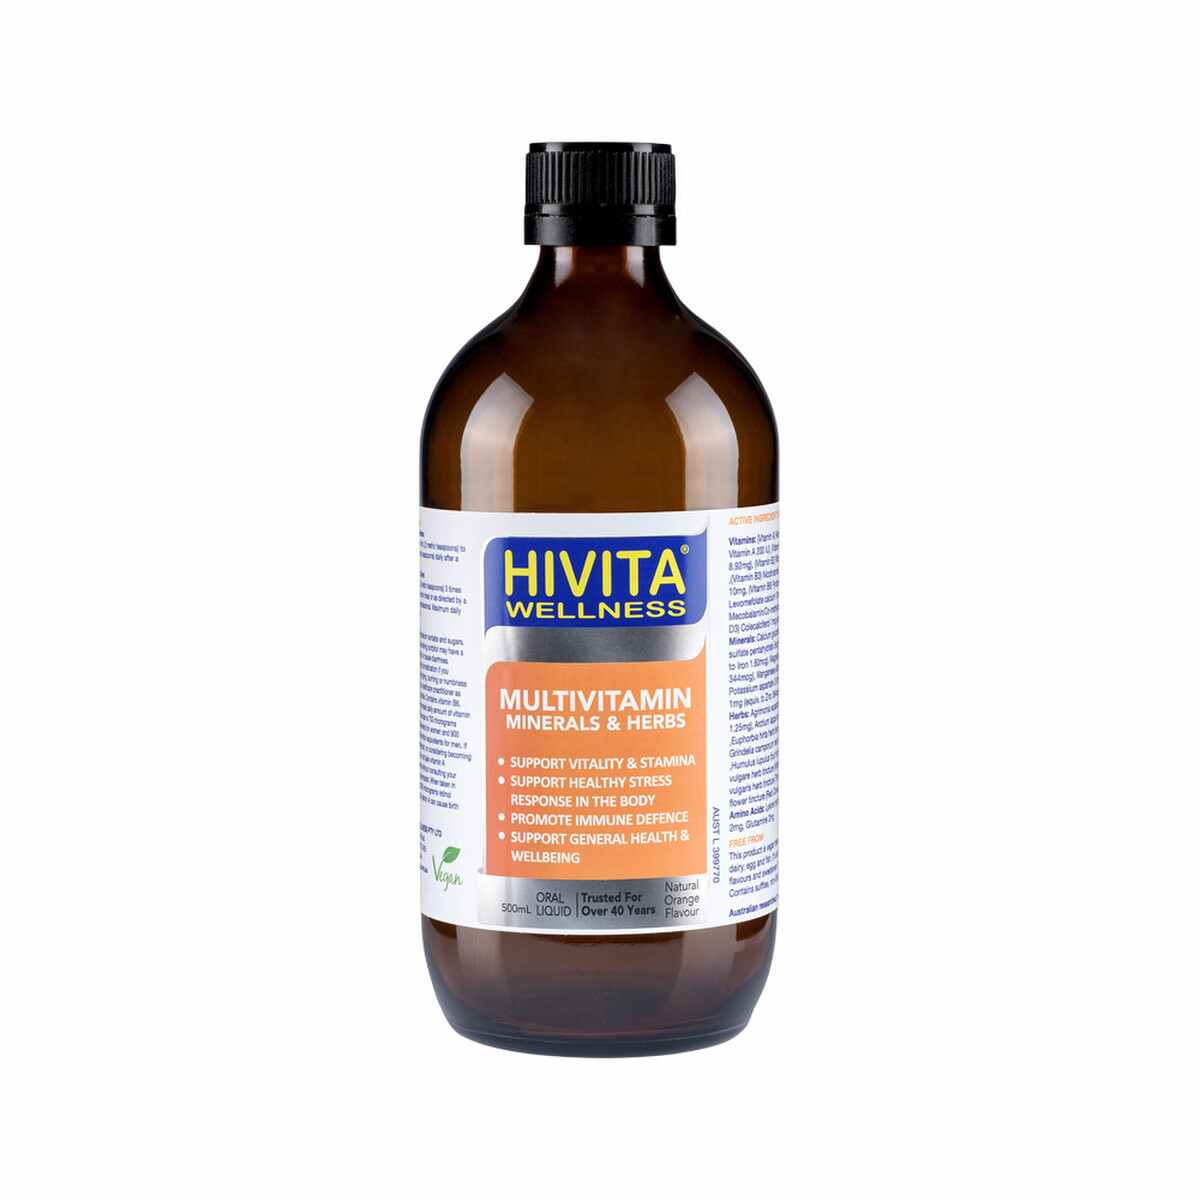 HiVita - Wellness Multivitamin Minerals & Herbs Oral Liquid